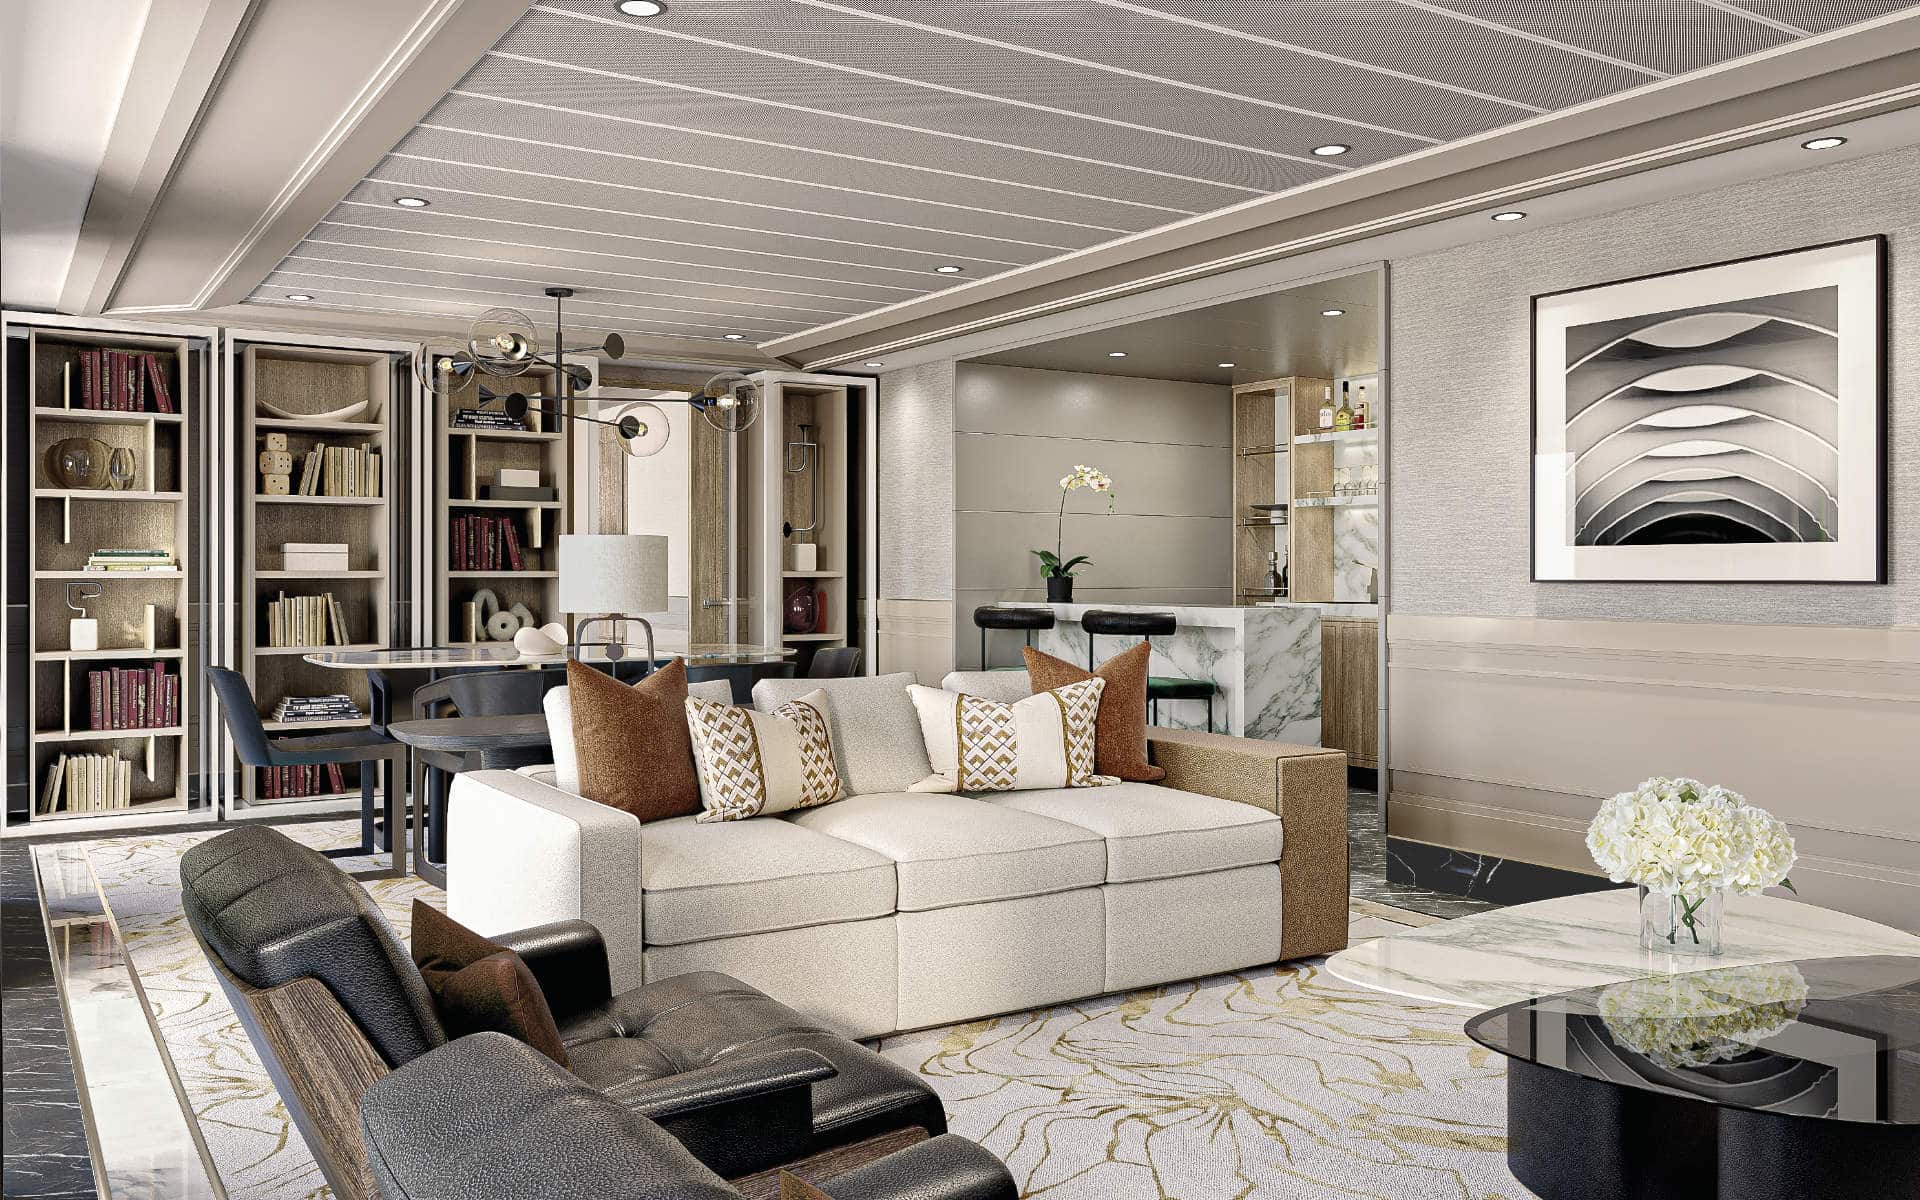 Seven Seas Grandeur, Grand Suite living room (rendering).